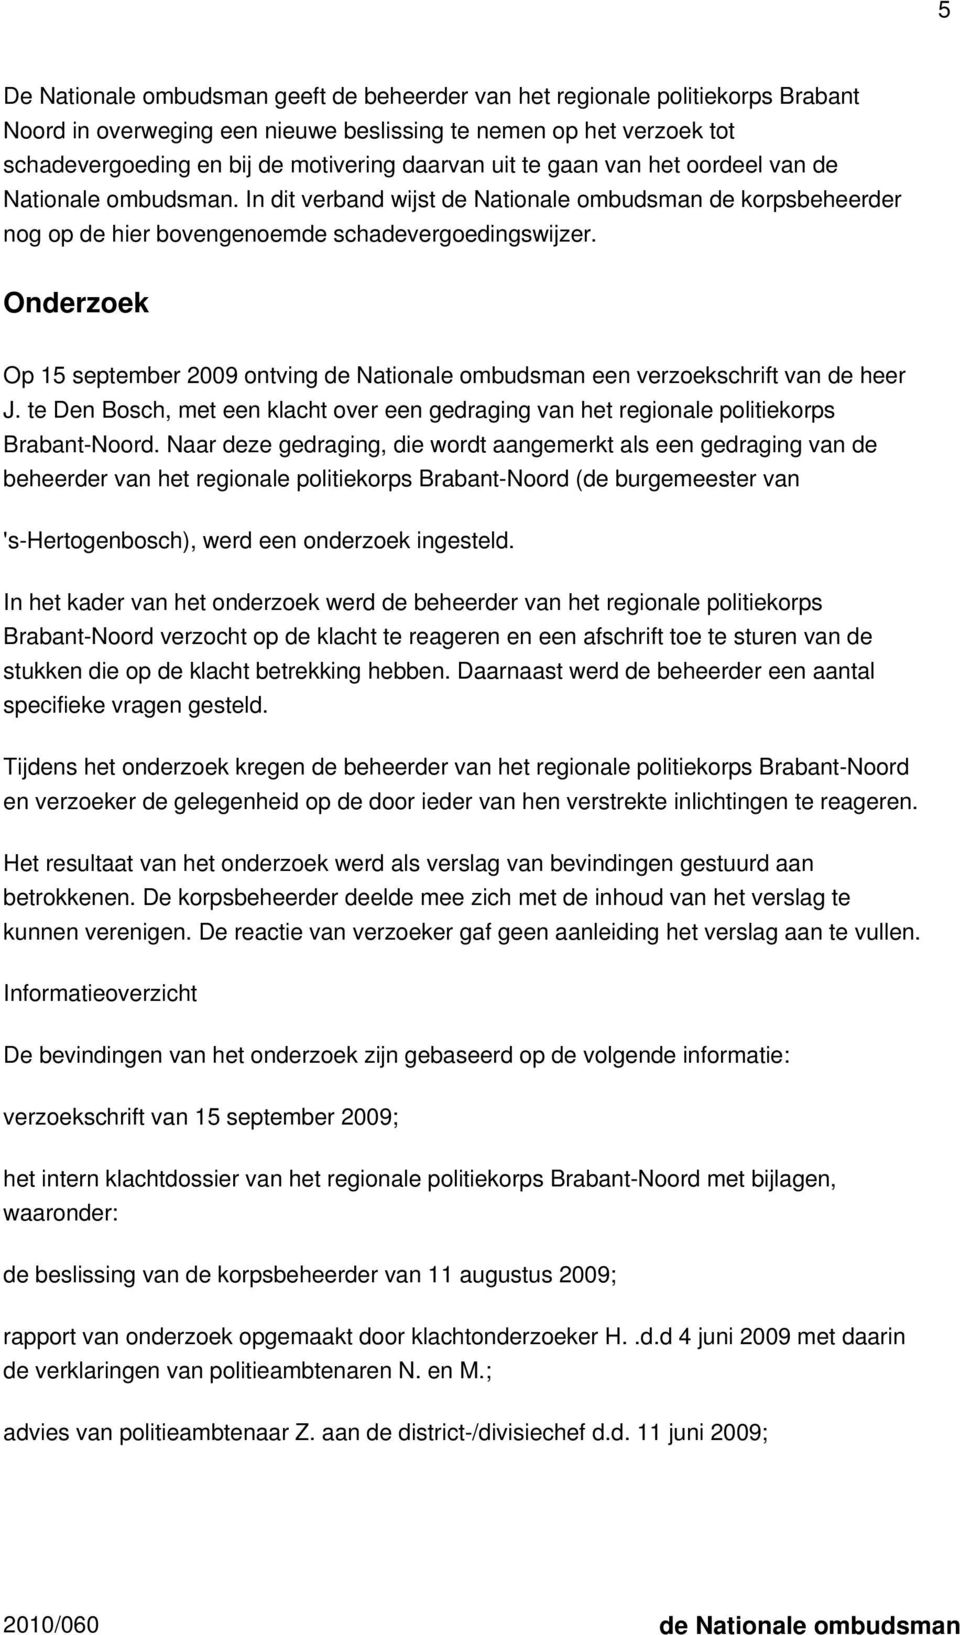 Onderzoek Op 15 september 2009 ontving de Nationale ombudsman een verzoekschrift van de heer J. te Den Bosch, met een klacht over een gedraging van het regionale politiekorps Brabant-Noord.